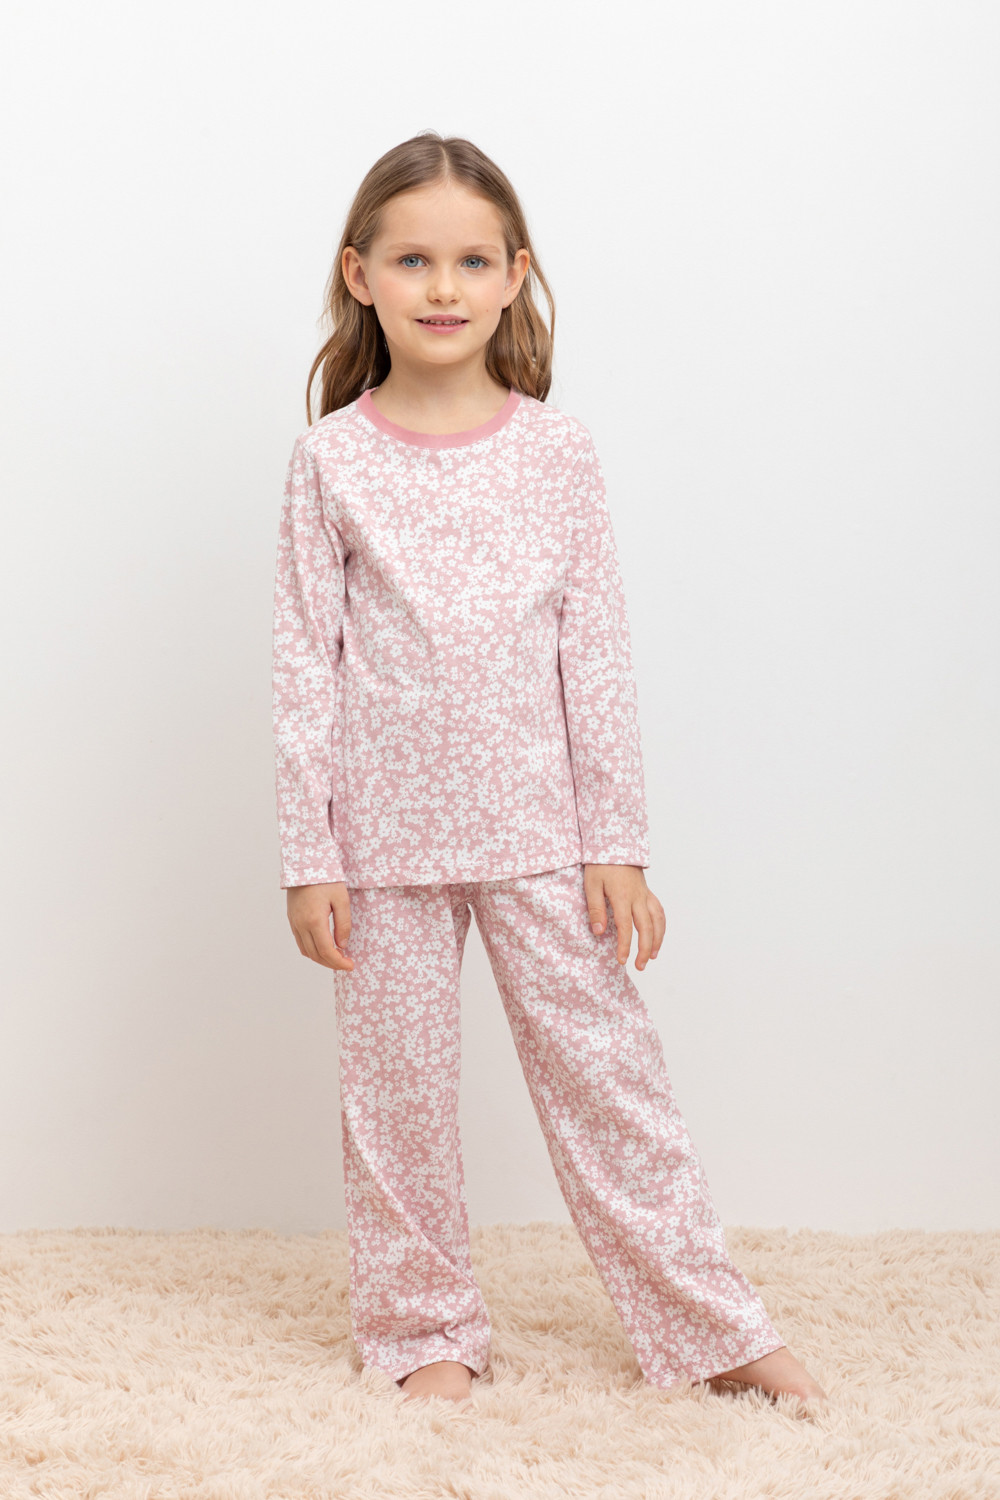 Пижама детская CROCKID МК 1512, М 3055-5, бледно-лиловый, цветочки, 110